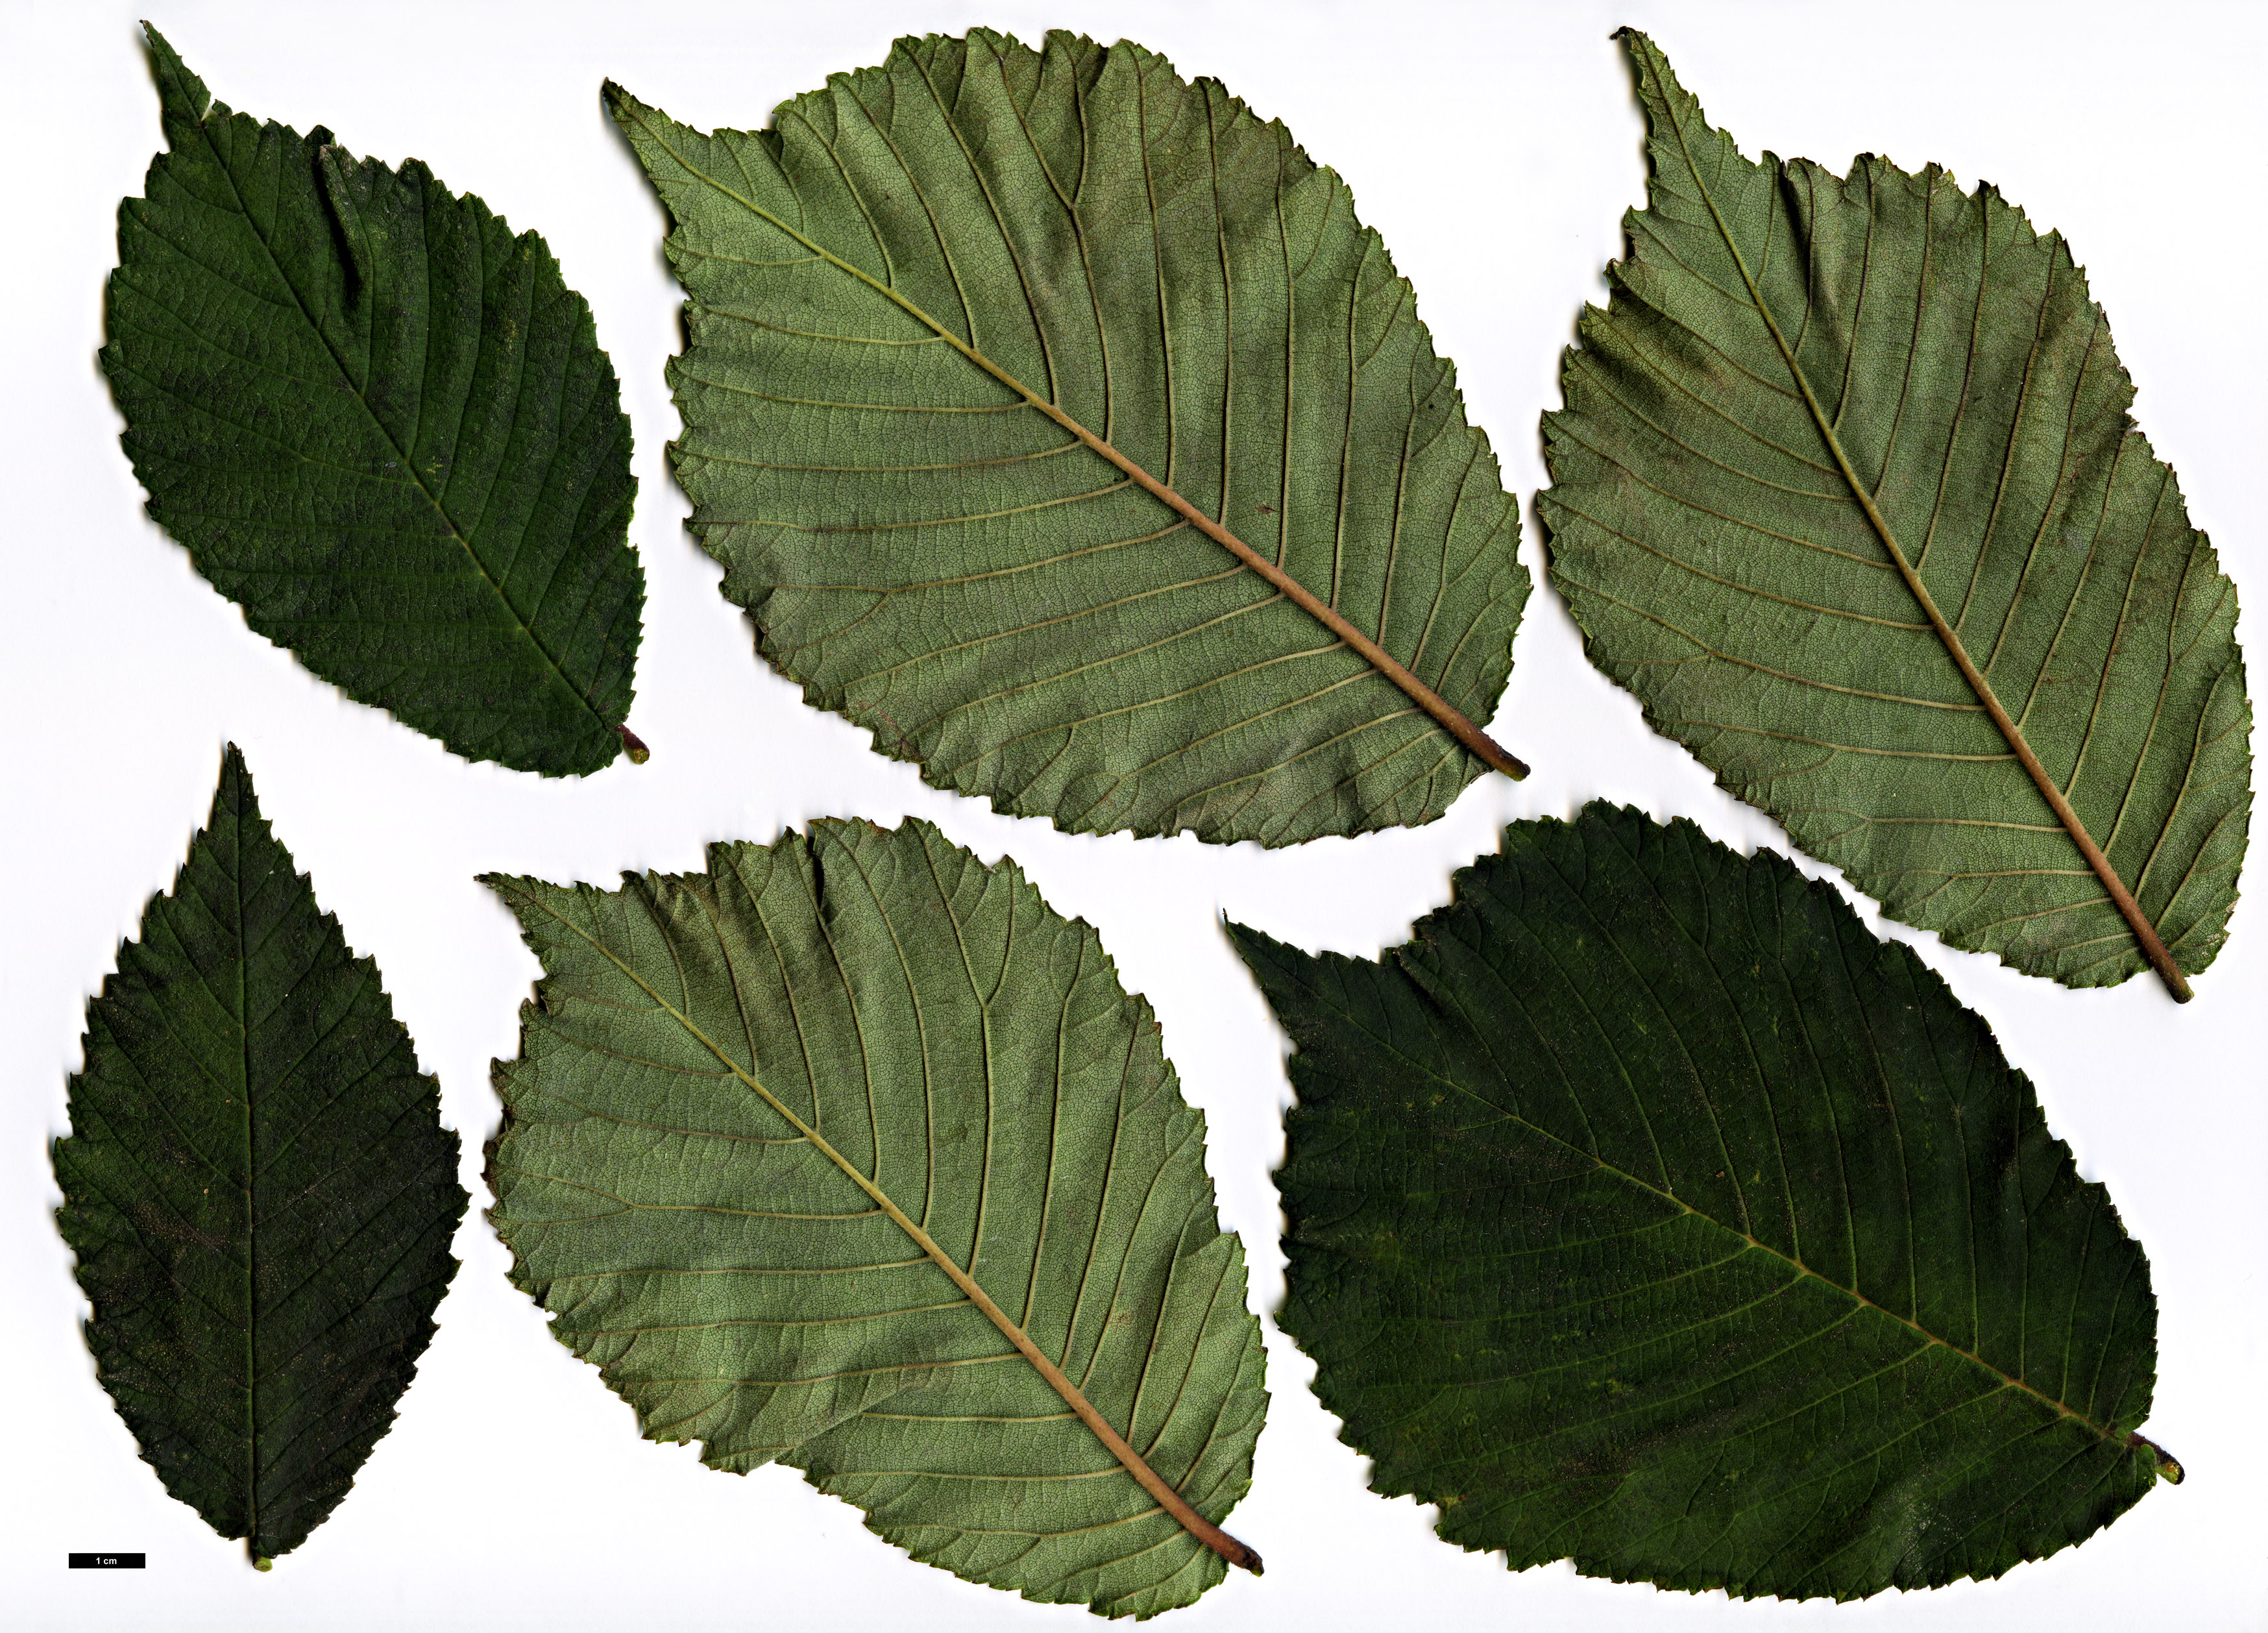 High resolution image: Family: Ulmaceae - Genus: Ulmus - Taxon: laciniata - SpeciesSub: var. nikkoensis